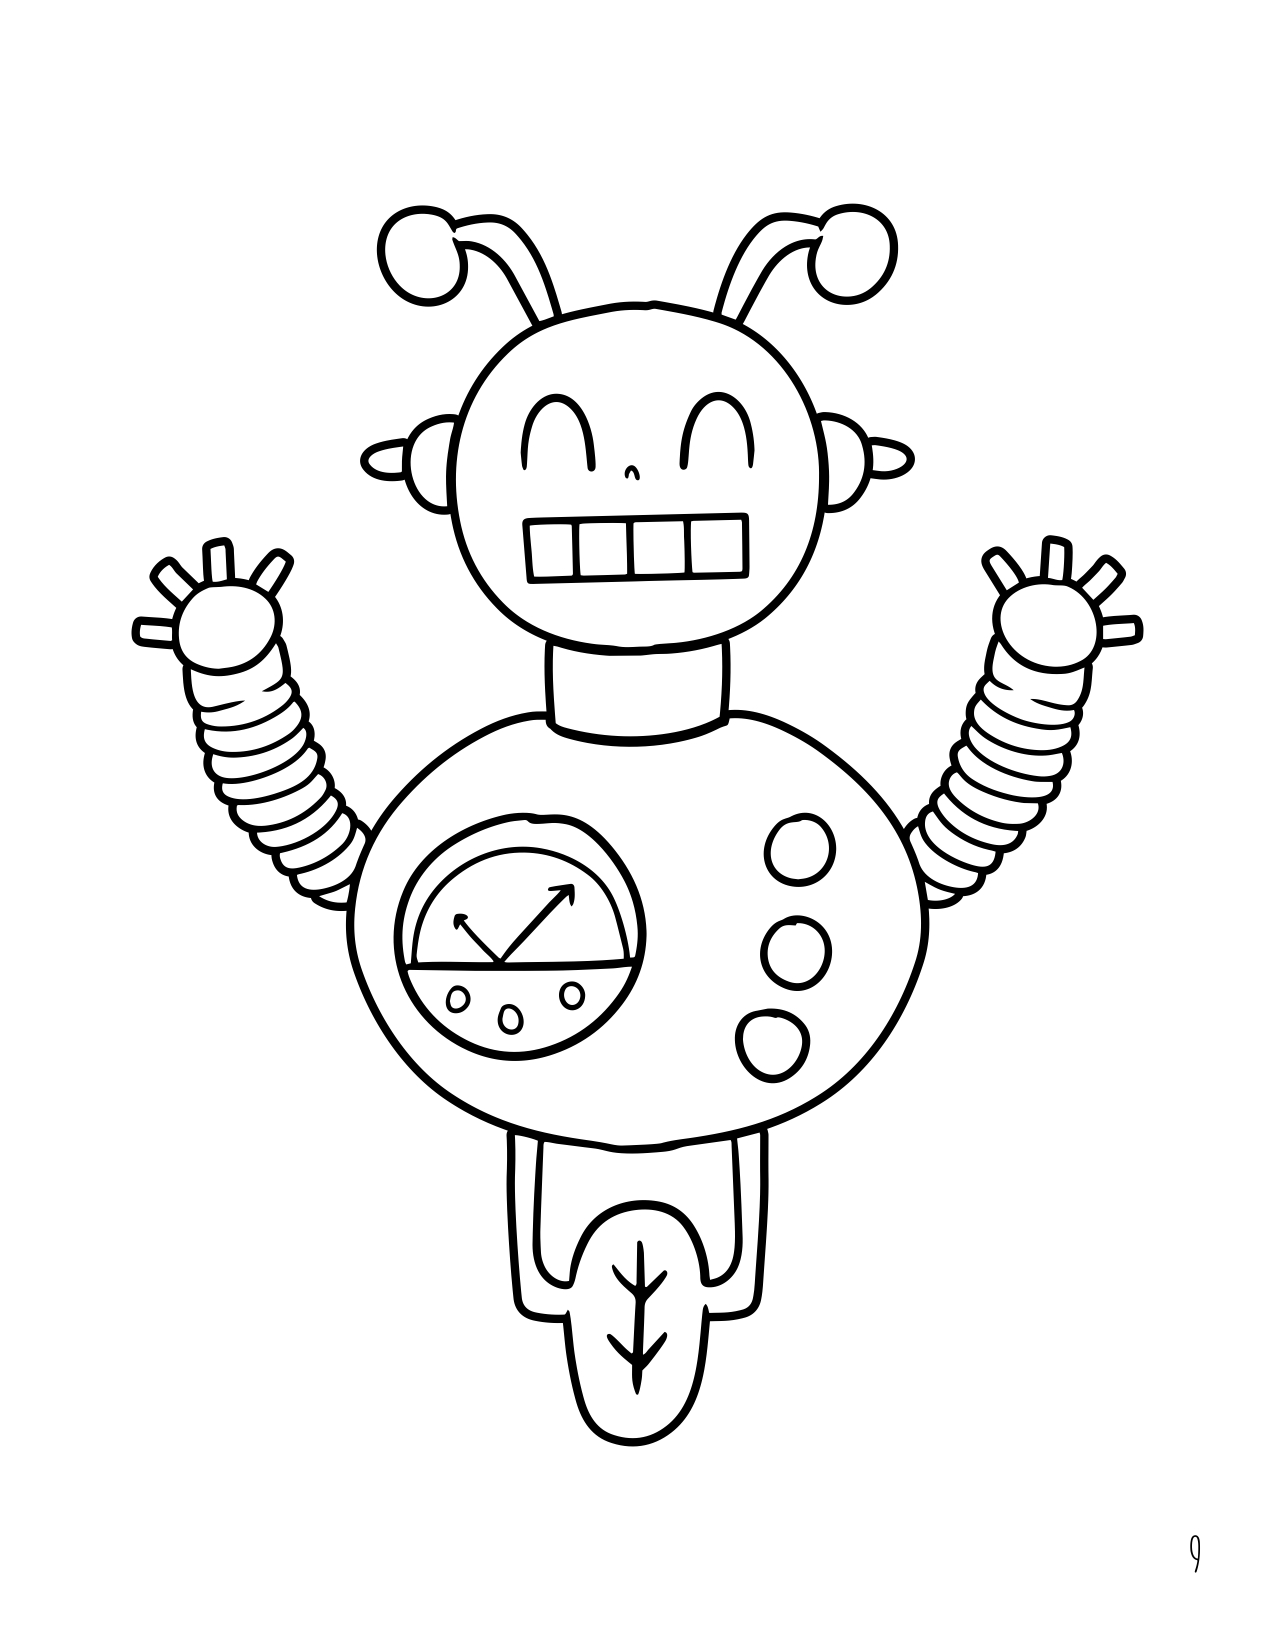 Tecknad stilrobot målarbok för barn